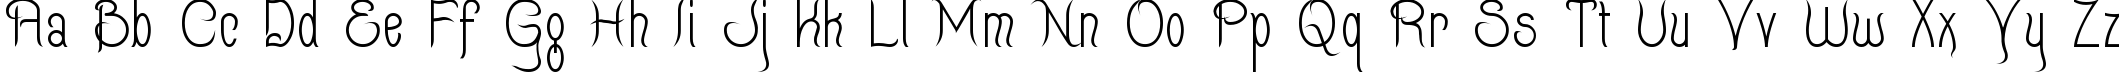 Пример написания английского алфавита шрифтом Quixotte